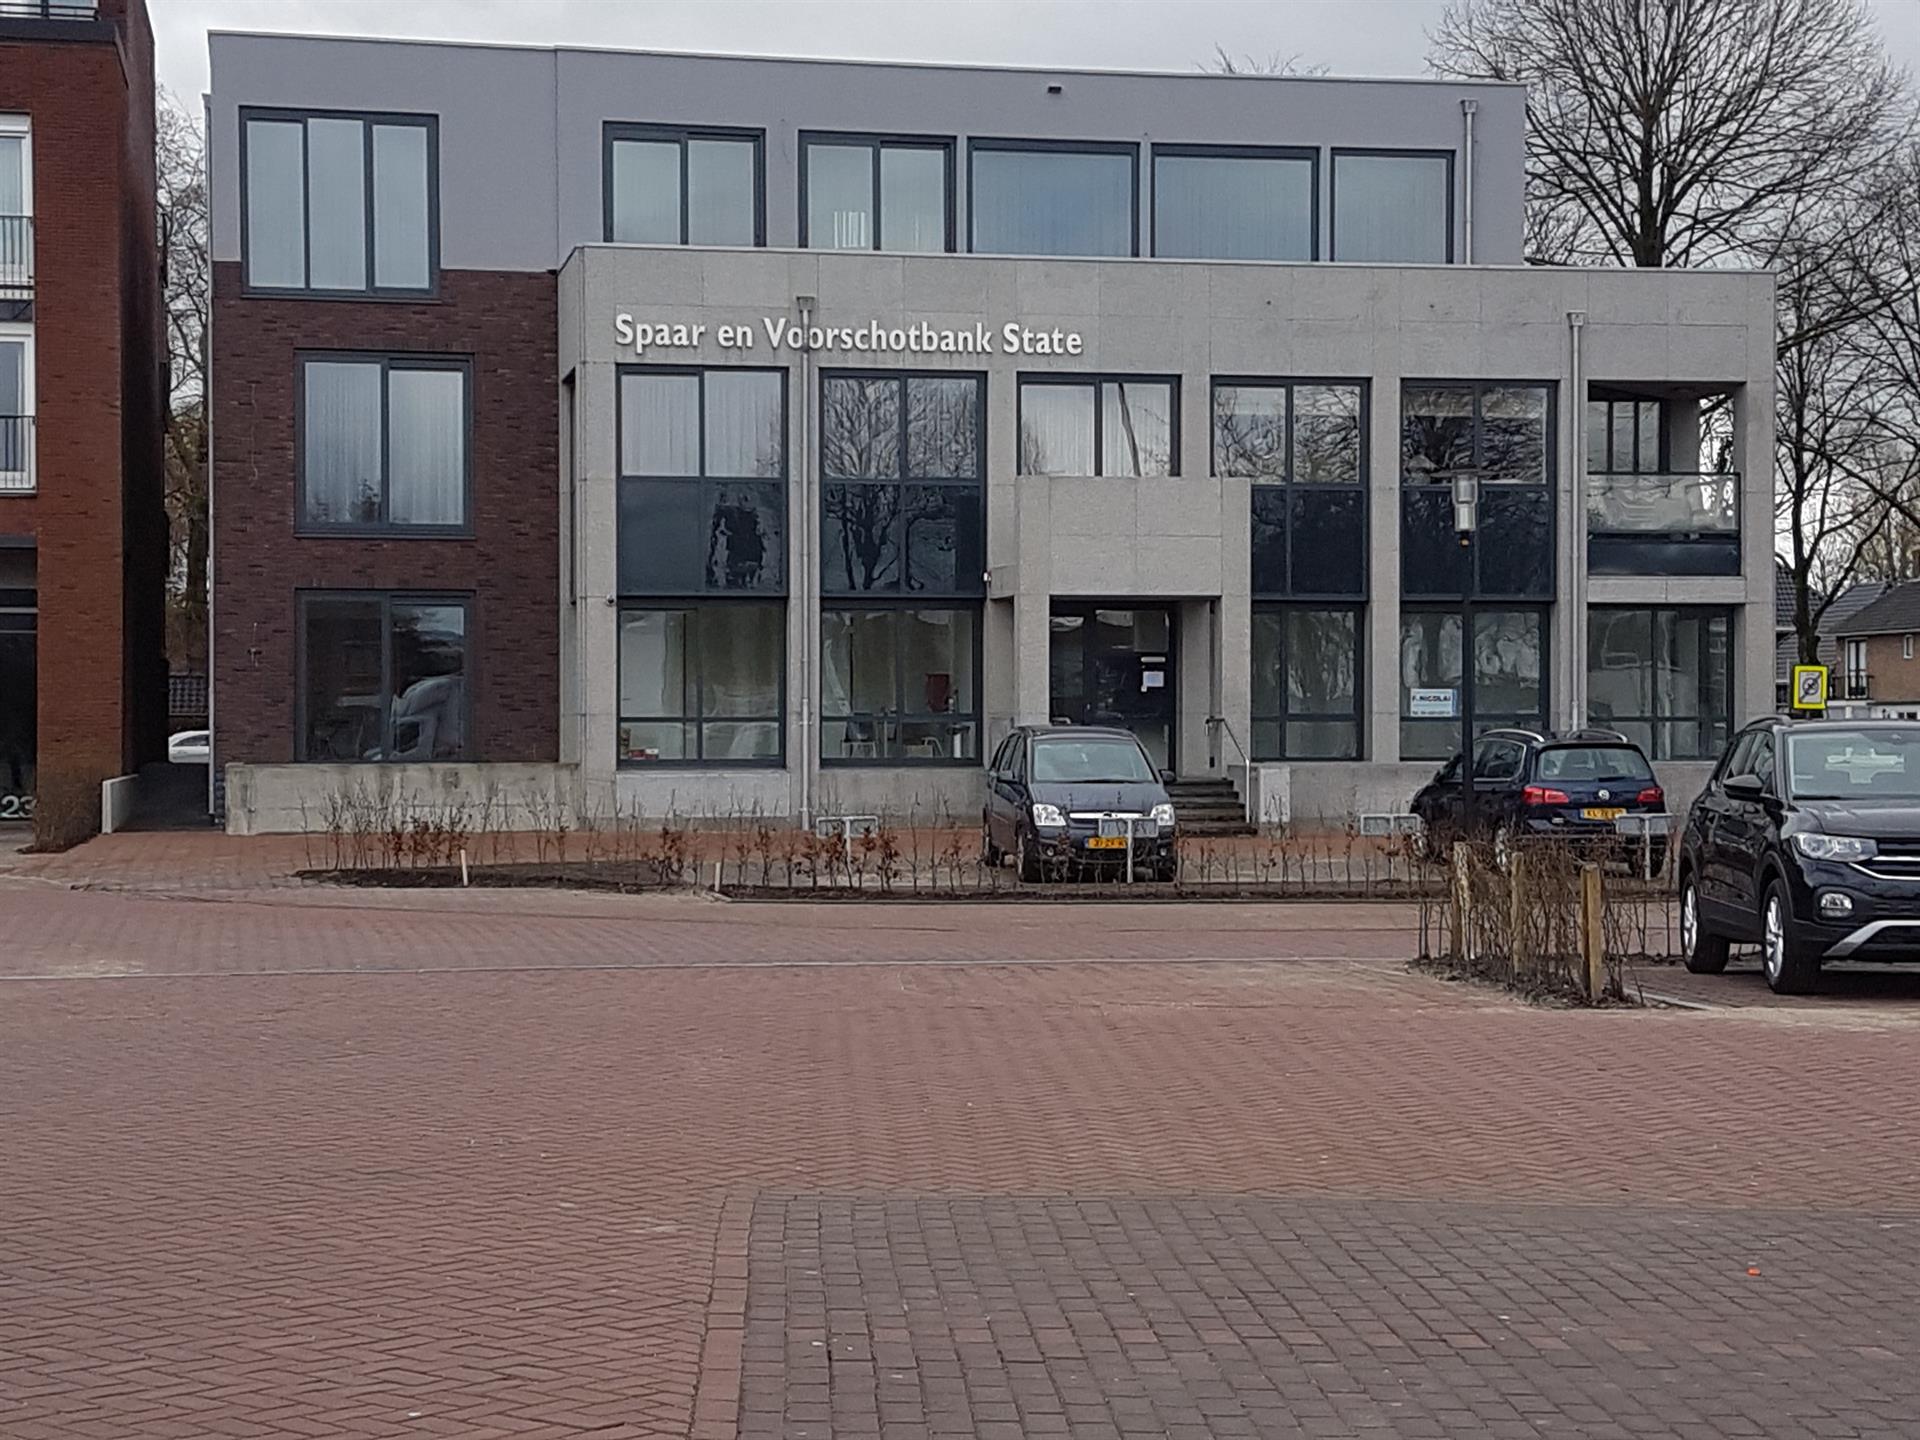  Spaar & Voorschotbank Surhuisterveen weer open